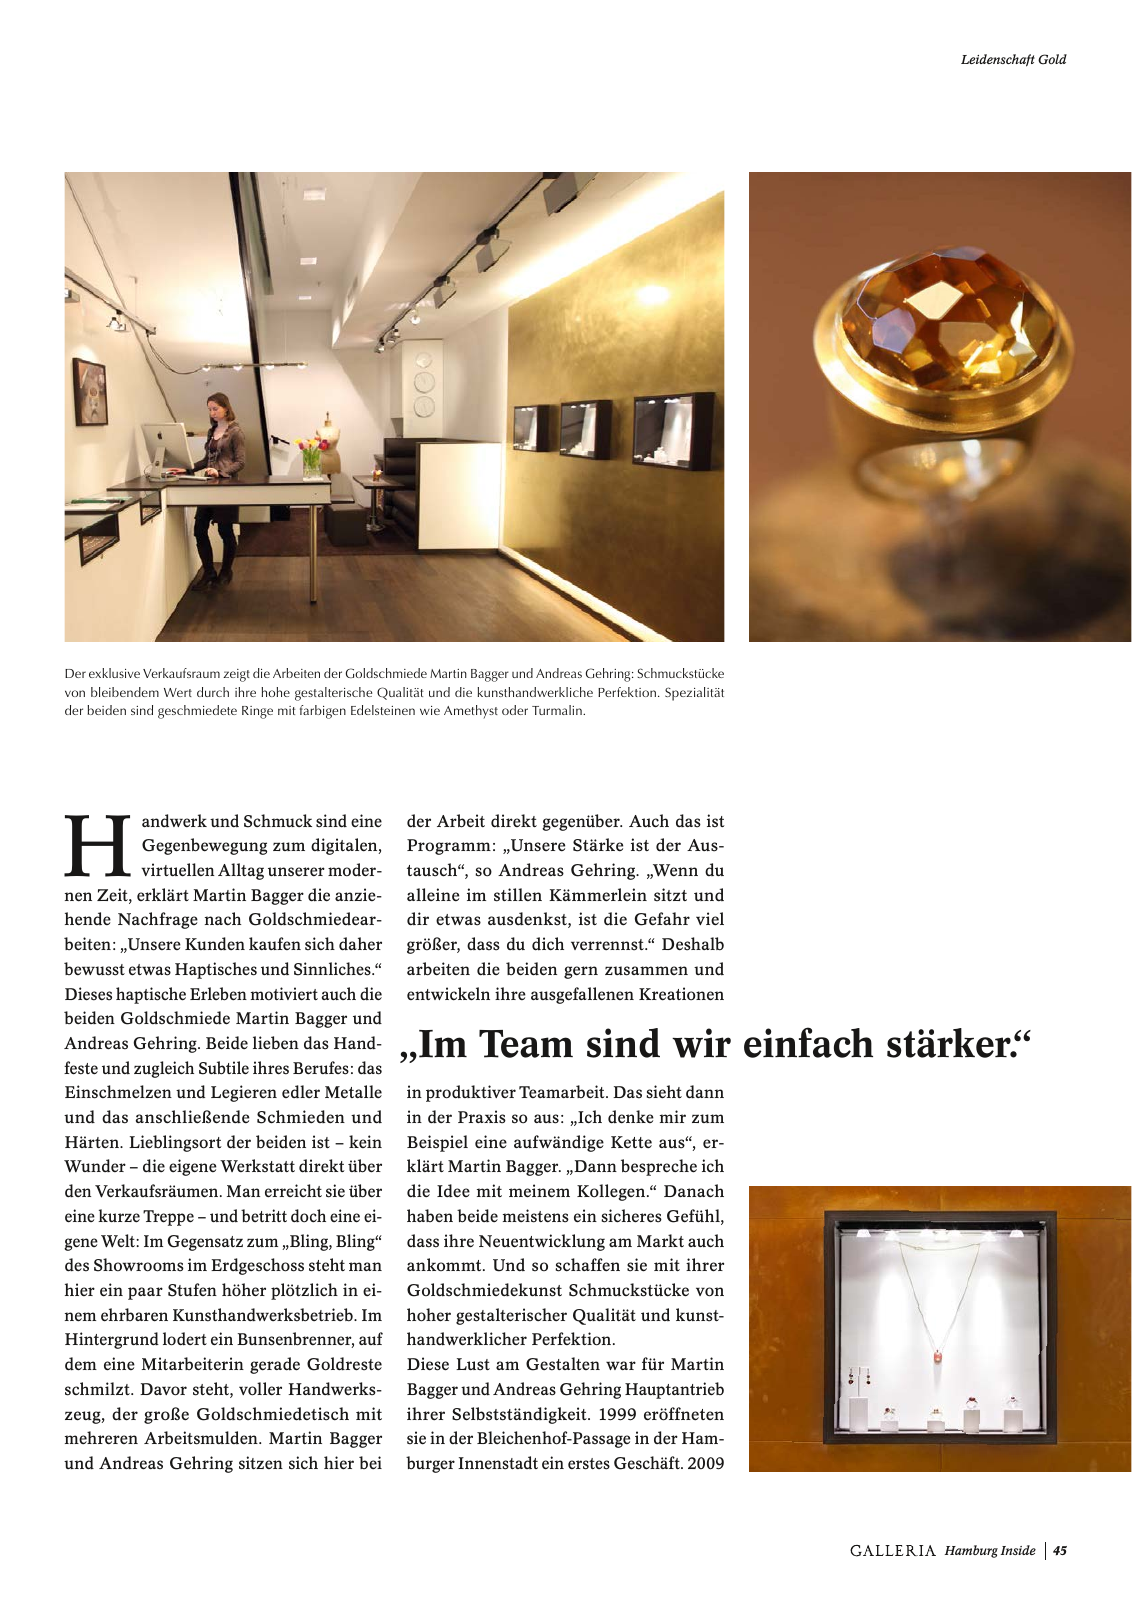 Vorschau GALLERIA Magazin Hamburg Inside 1 Seite 45